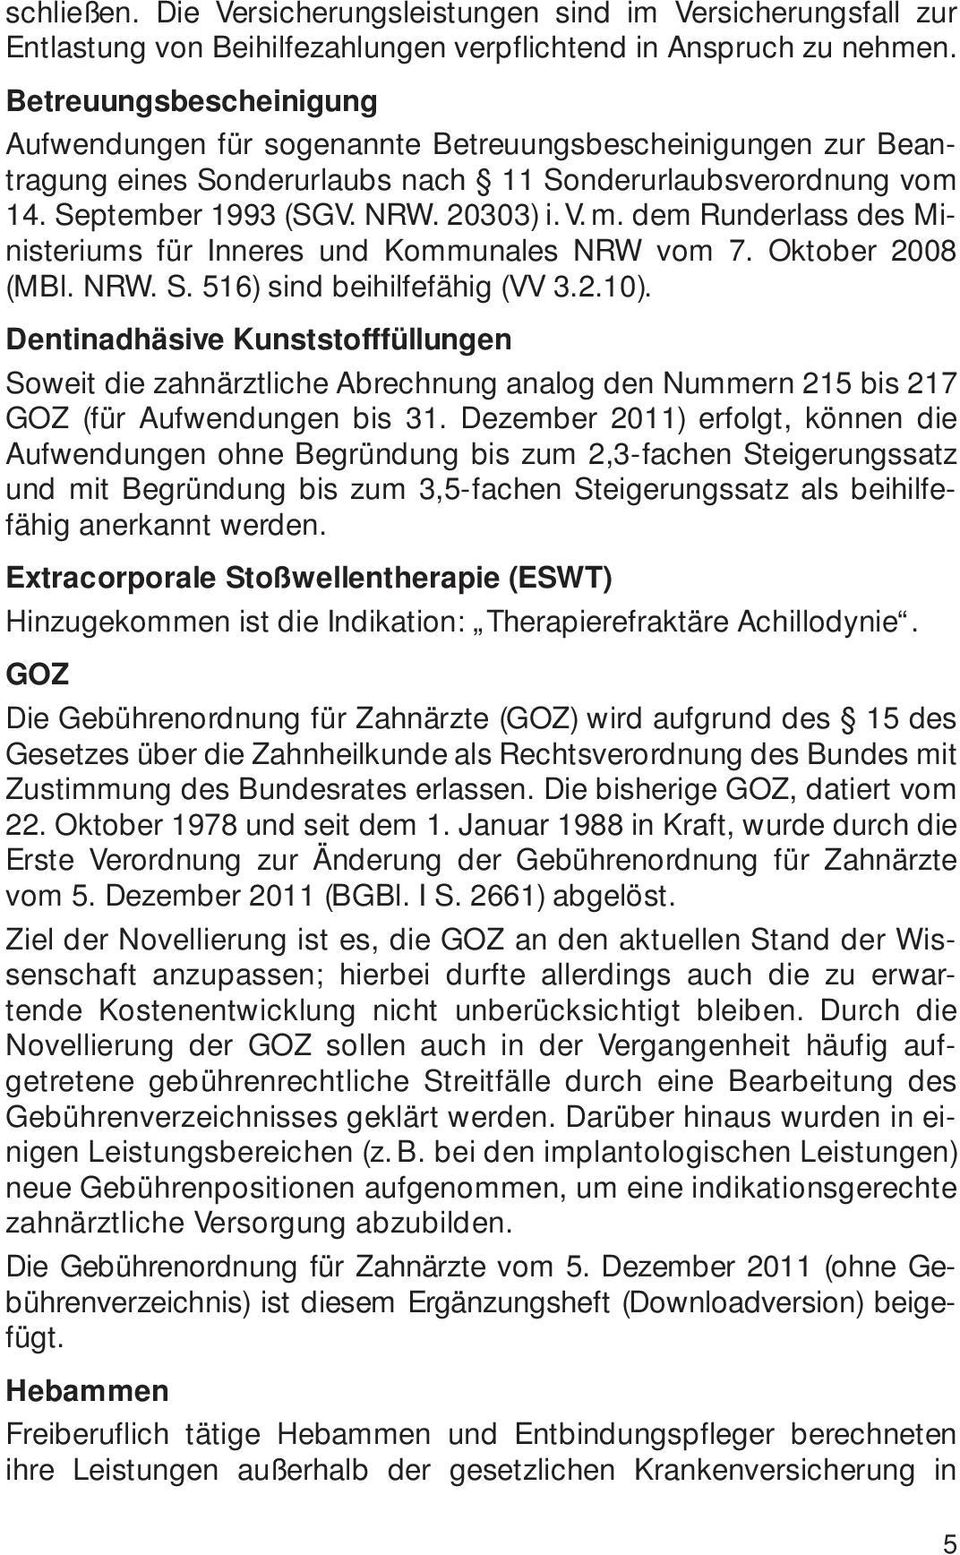 dem Runderlass des Ministeriums für Inneres und Kommunales NRW vom 7. Oktober 2008 (MBl. NRW. S. 516) sind beihilfefähig (VV 3.2.10).